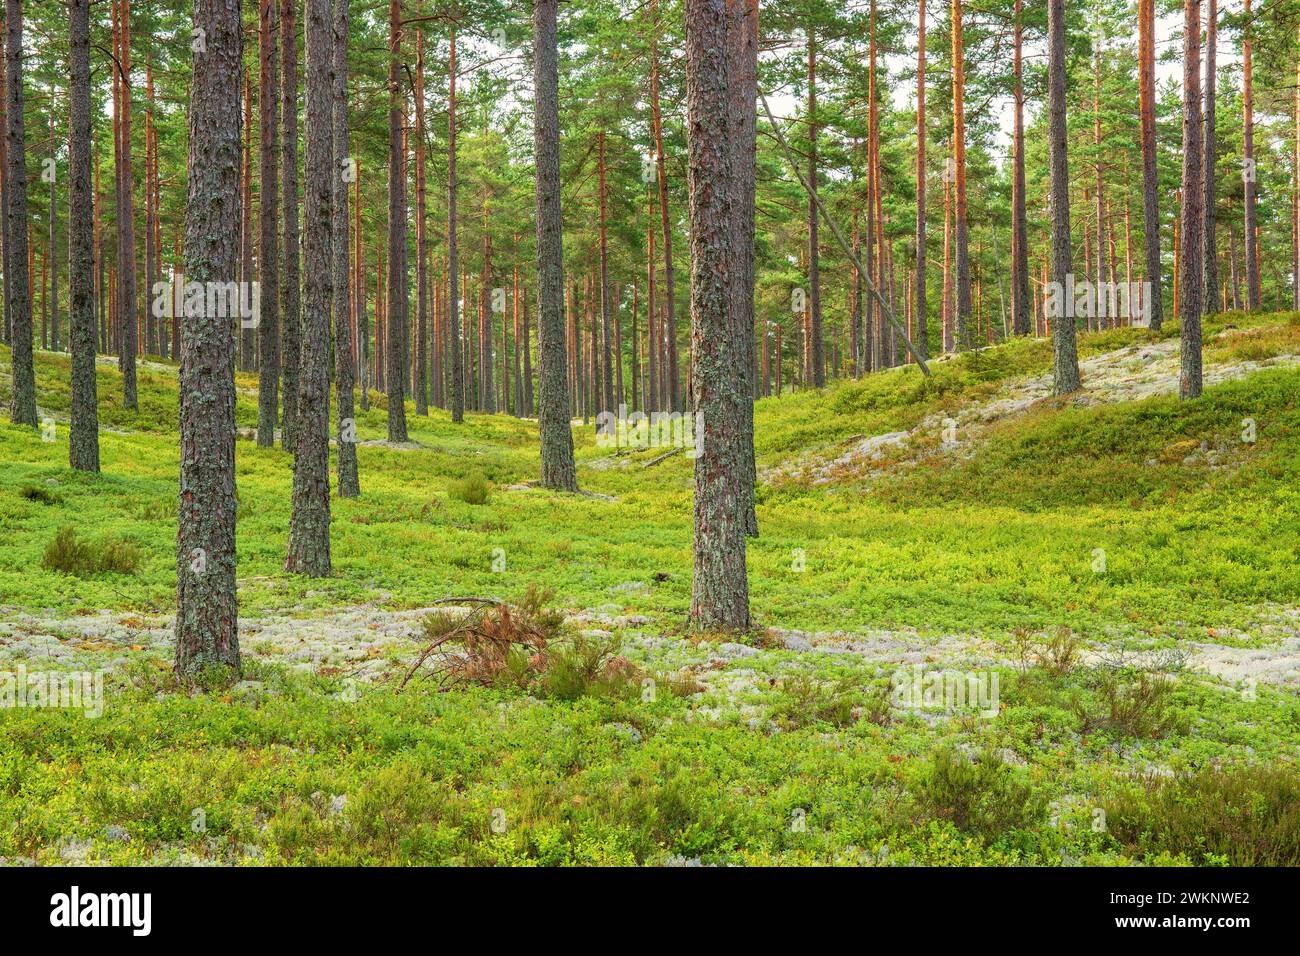 Bosco di pini con licheni della cladonia e cespugli verdi di mirtilli sul fondo della foresta Foto Stock